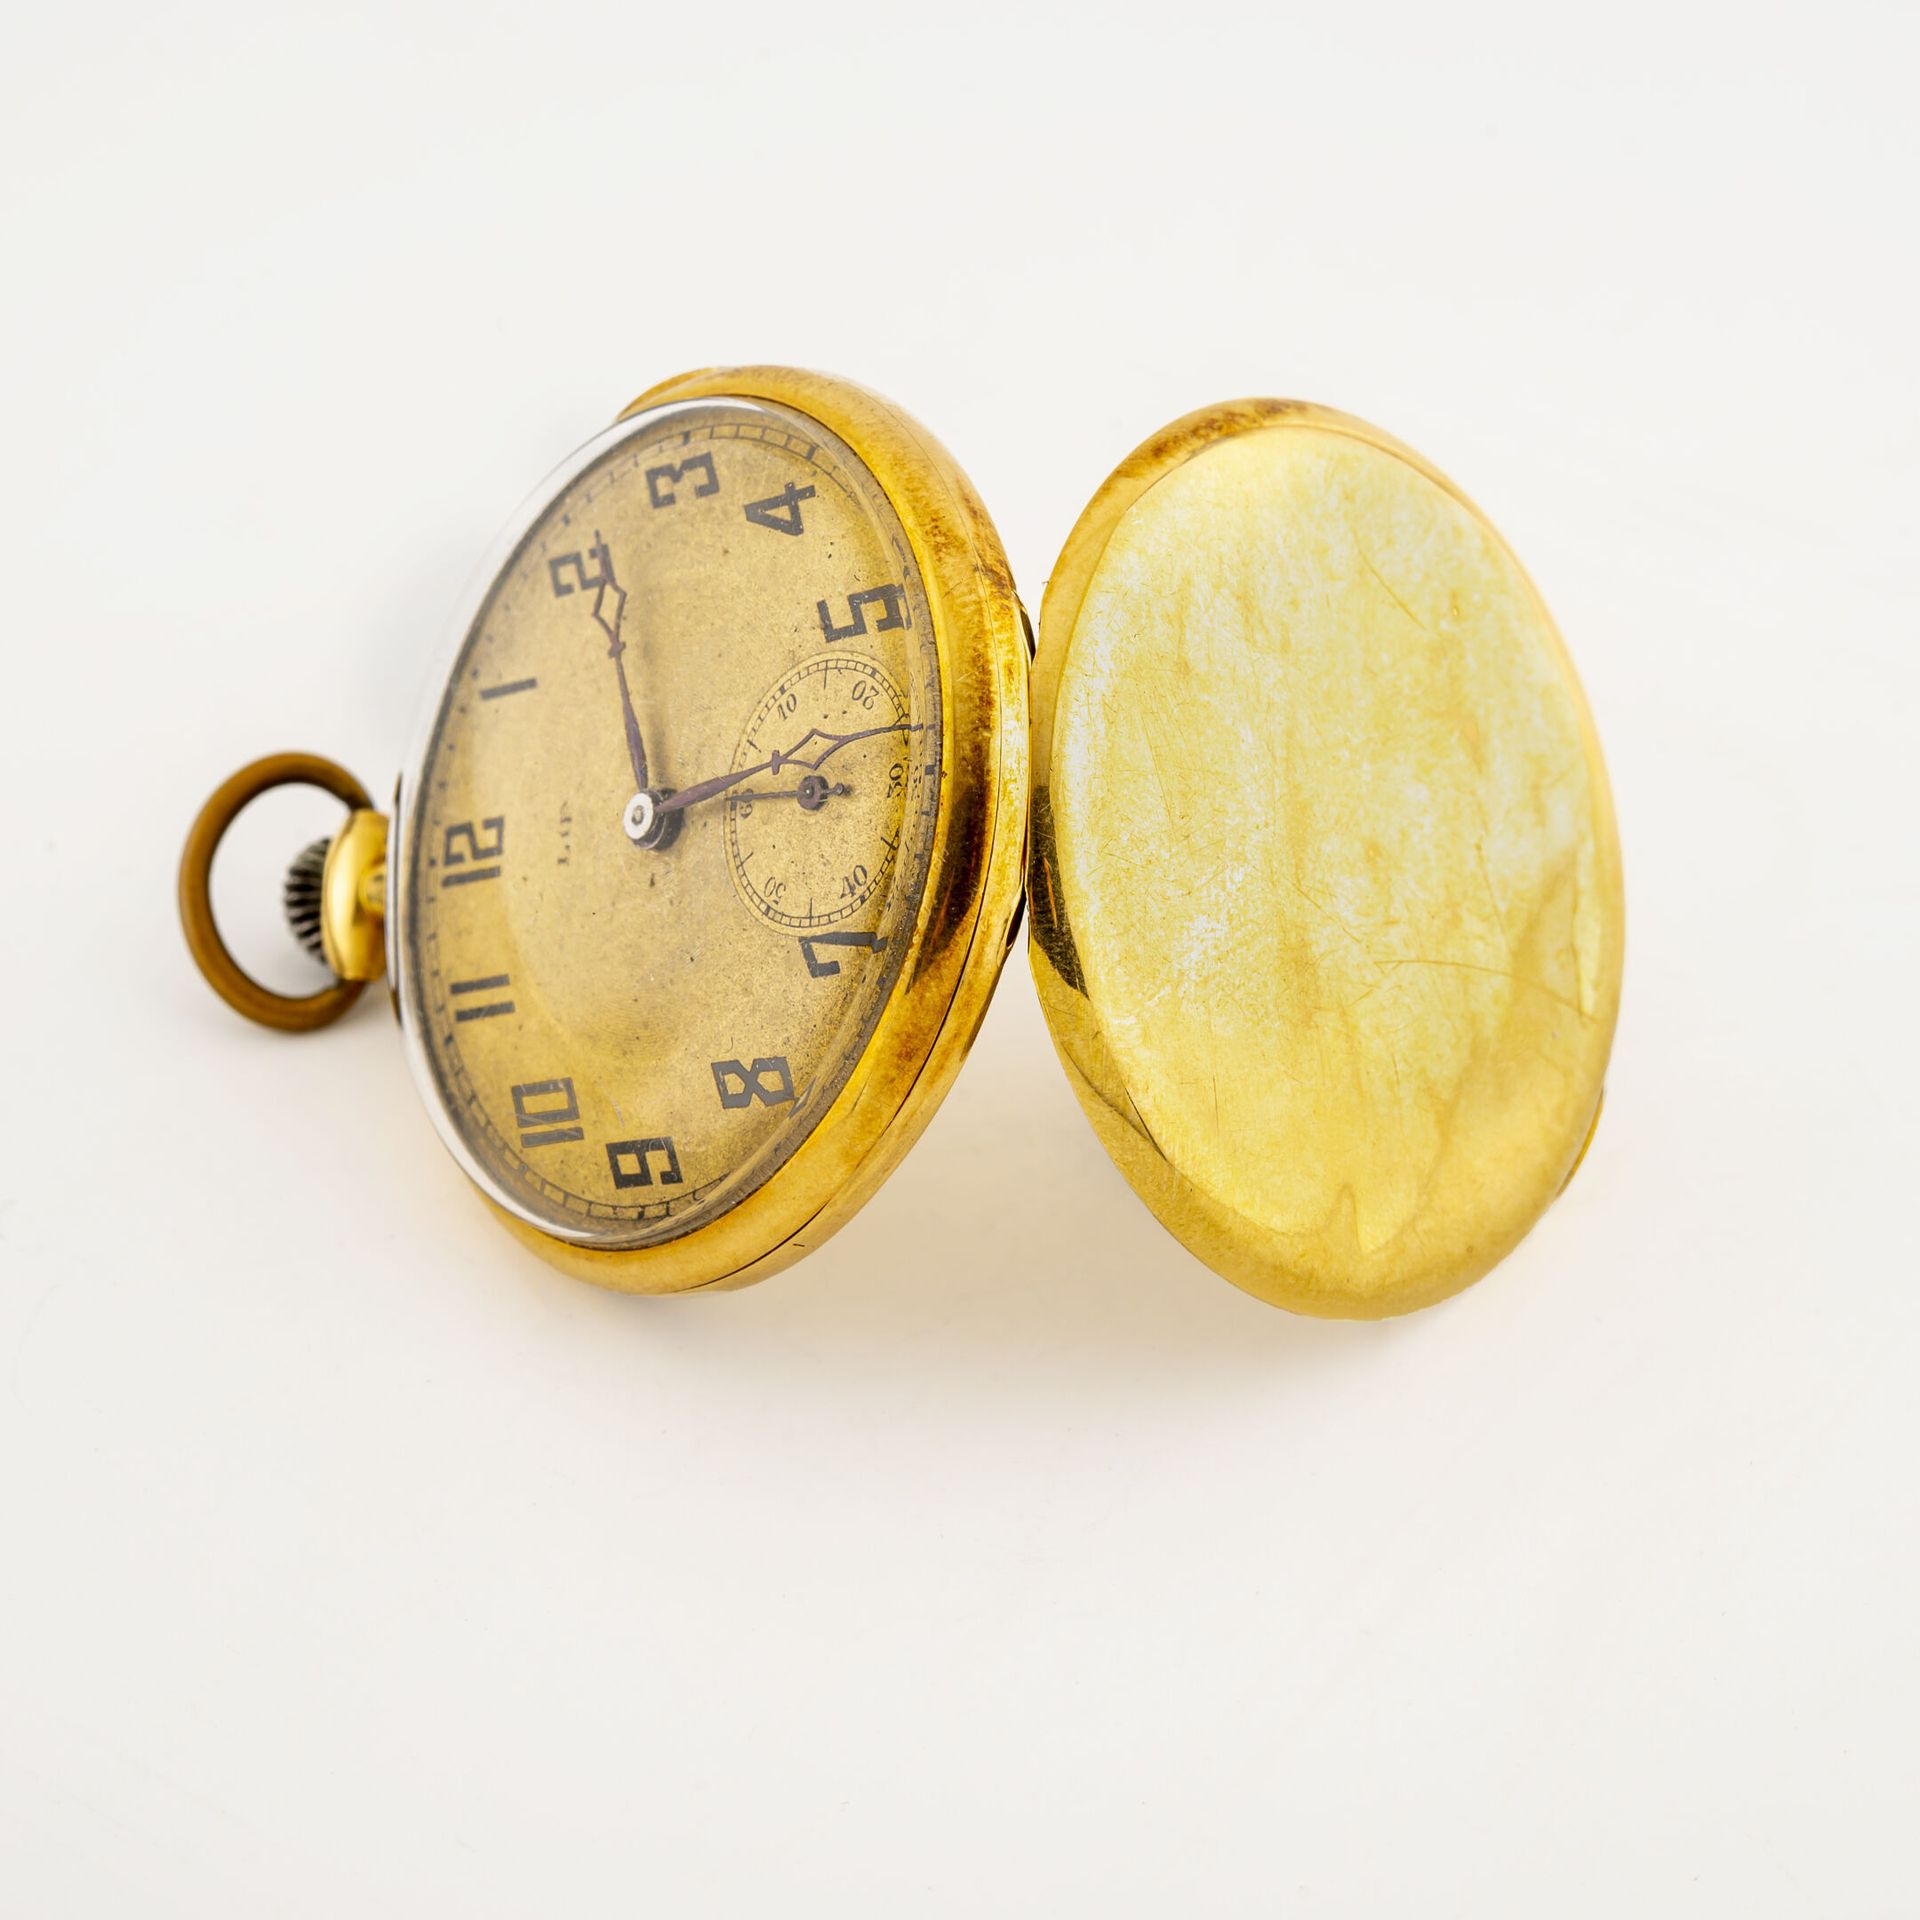 Null Taschenuhr aus Gelbgold (750).

Hinterer Deckel mit einfarbigem Dekor, numm&hellip;